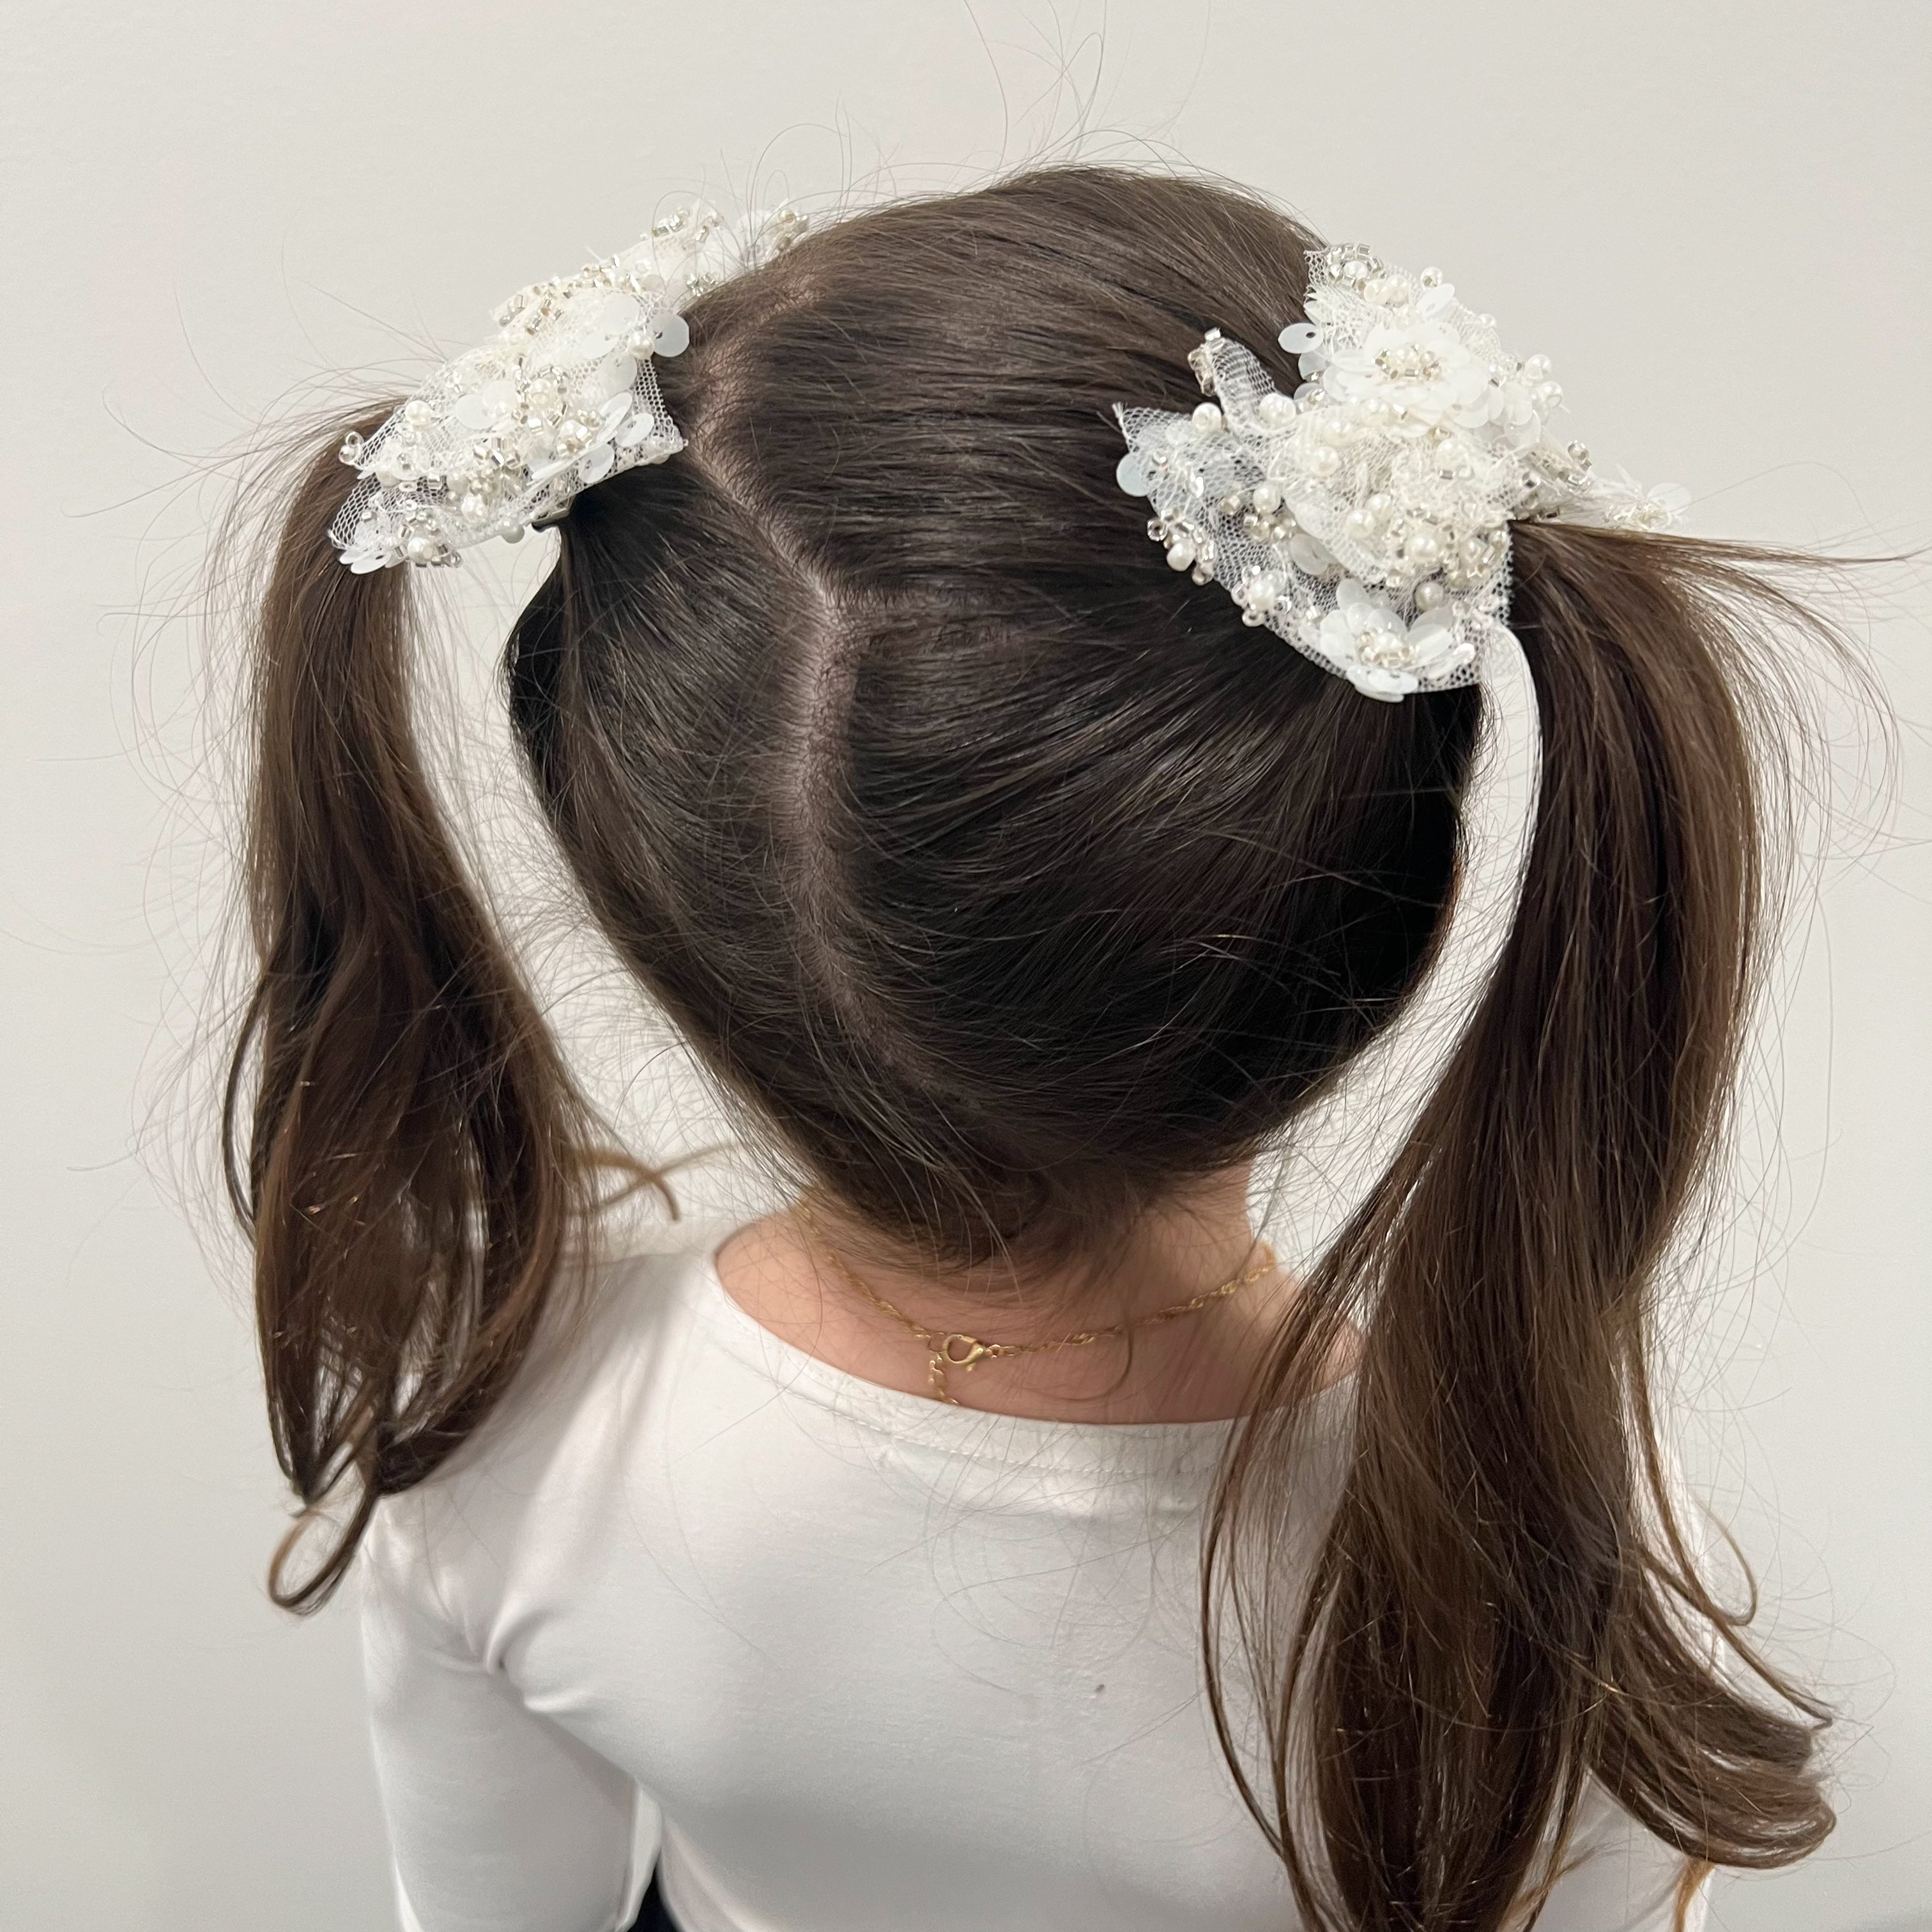 Anastasia Mini Bows